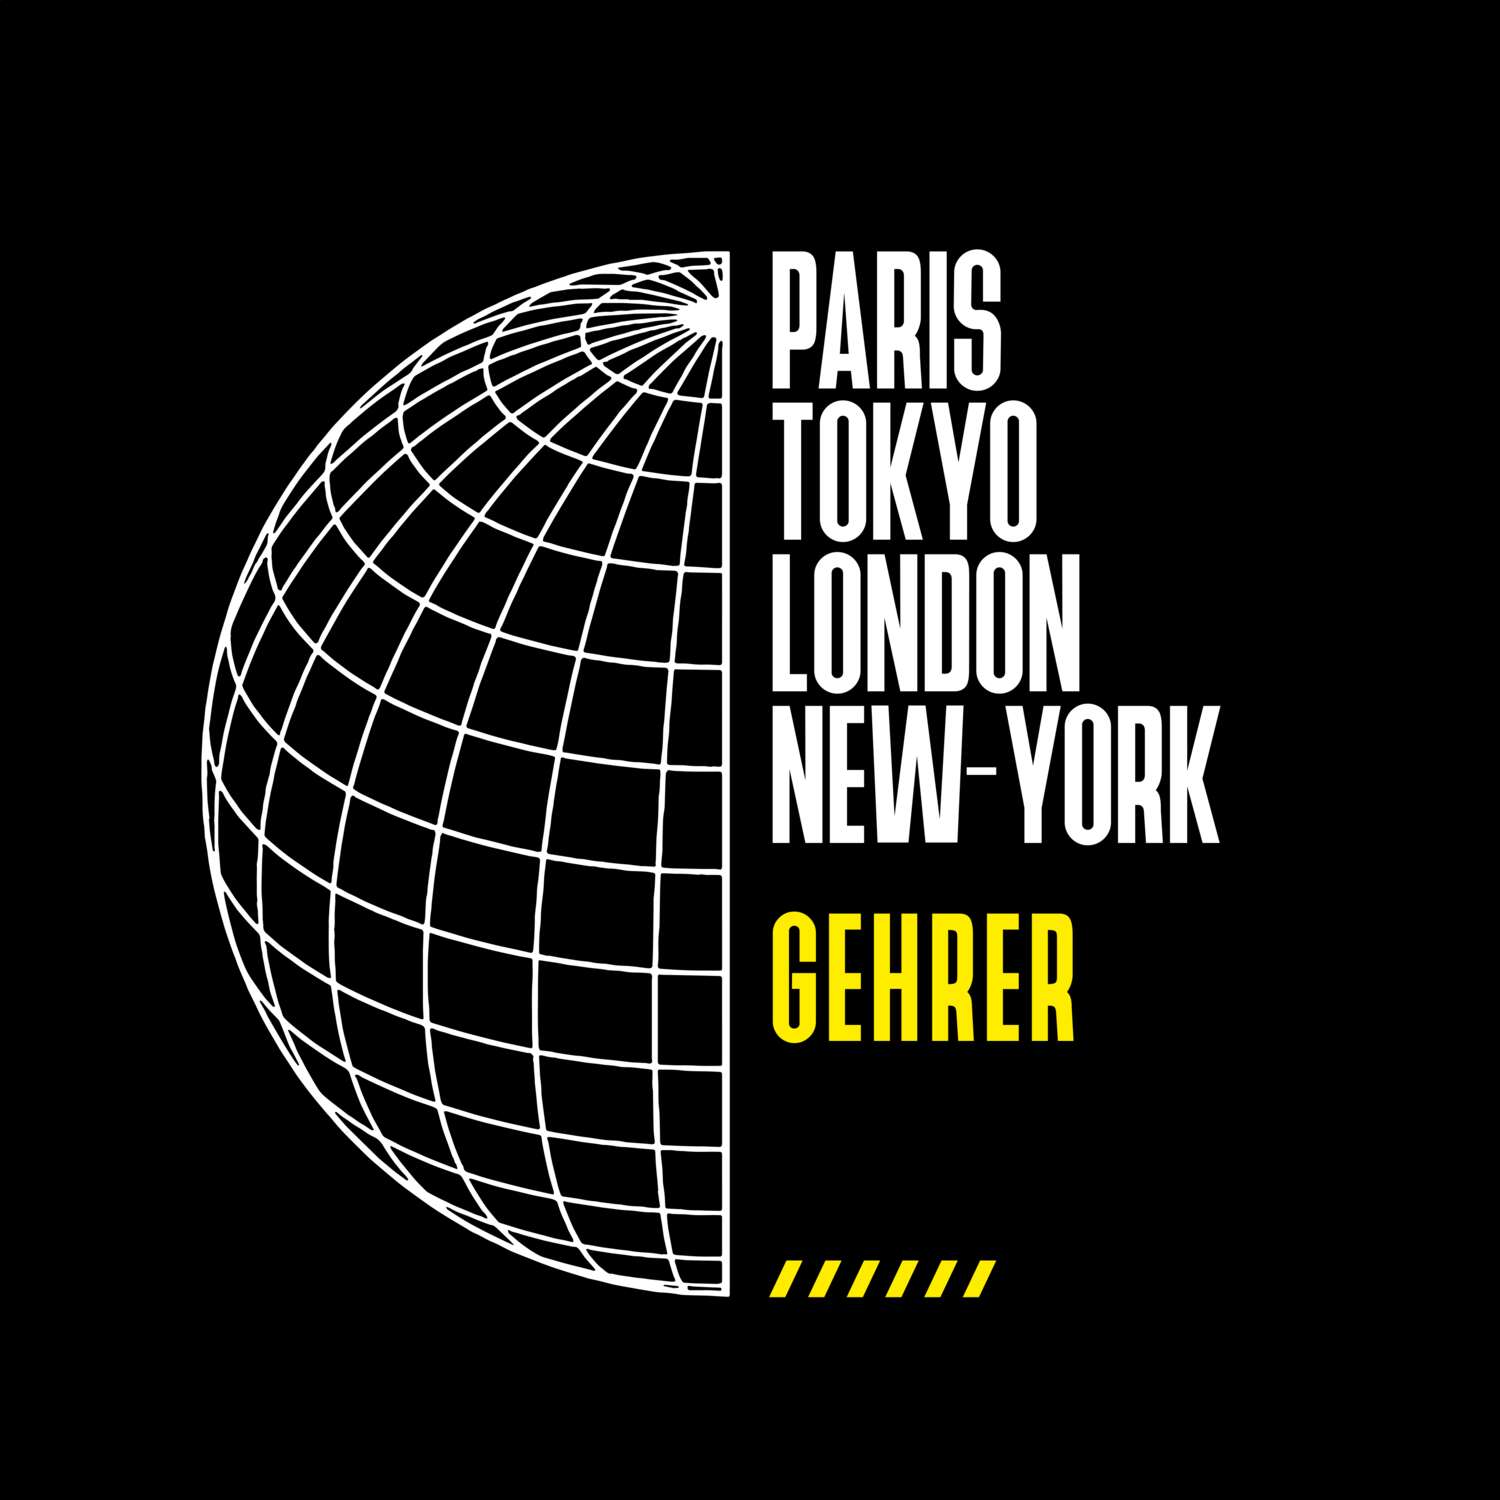 Gehrer T-Shirt »Paris Tokyo London«